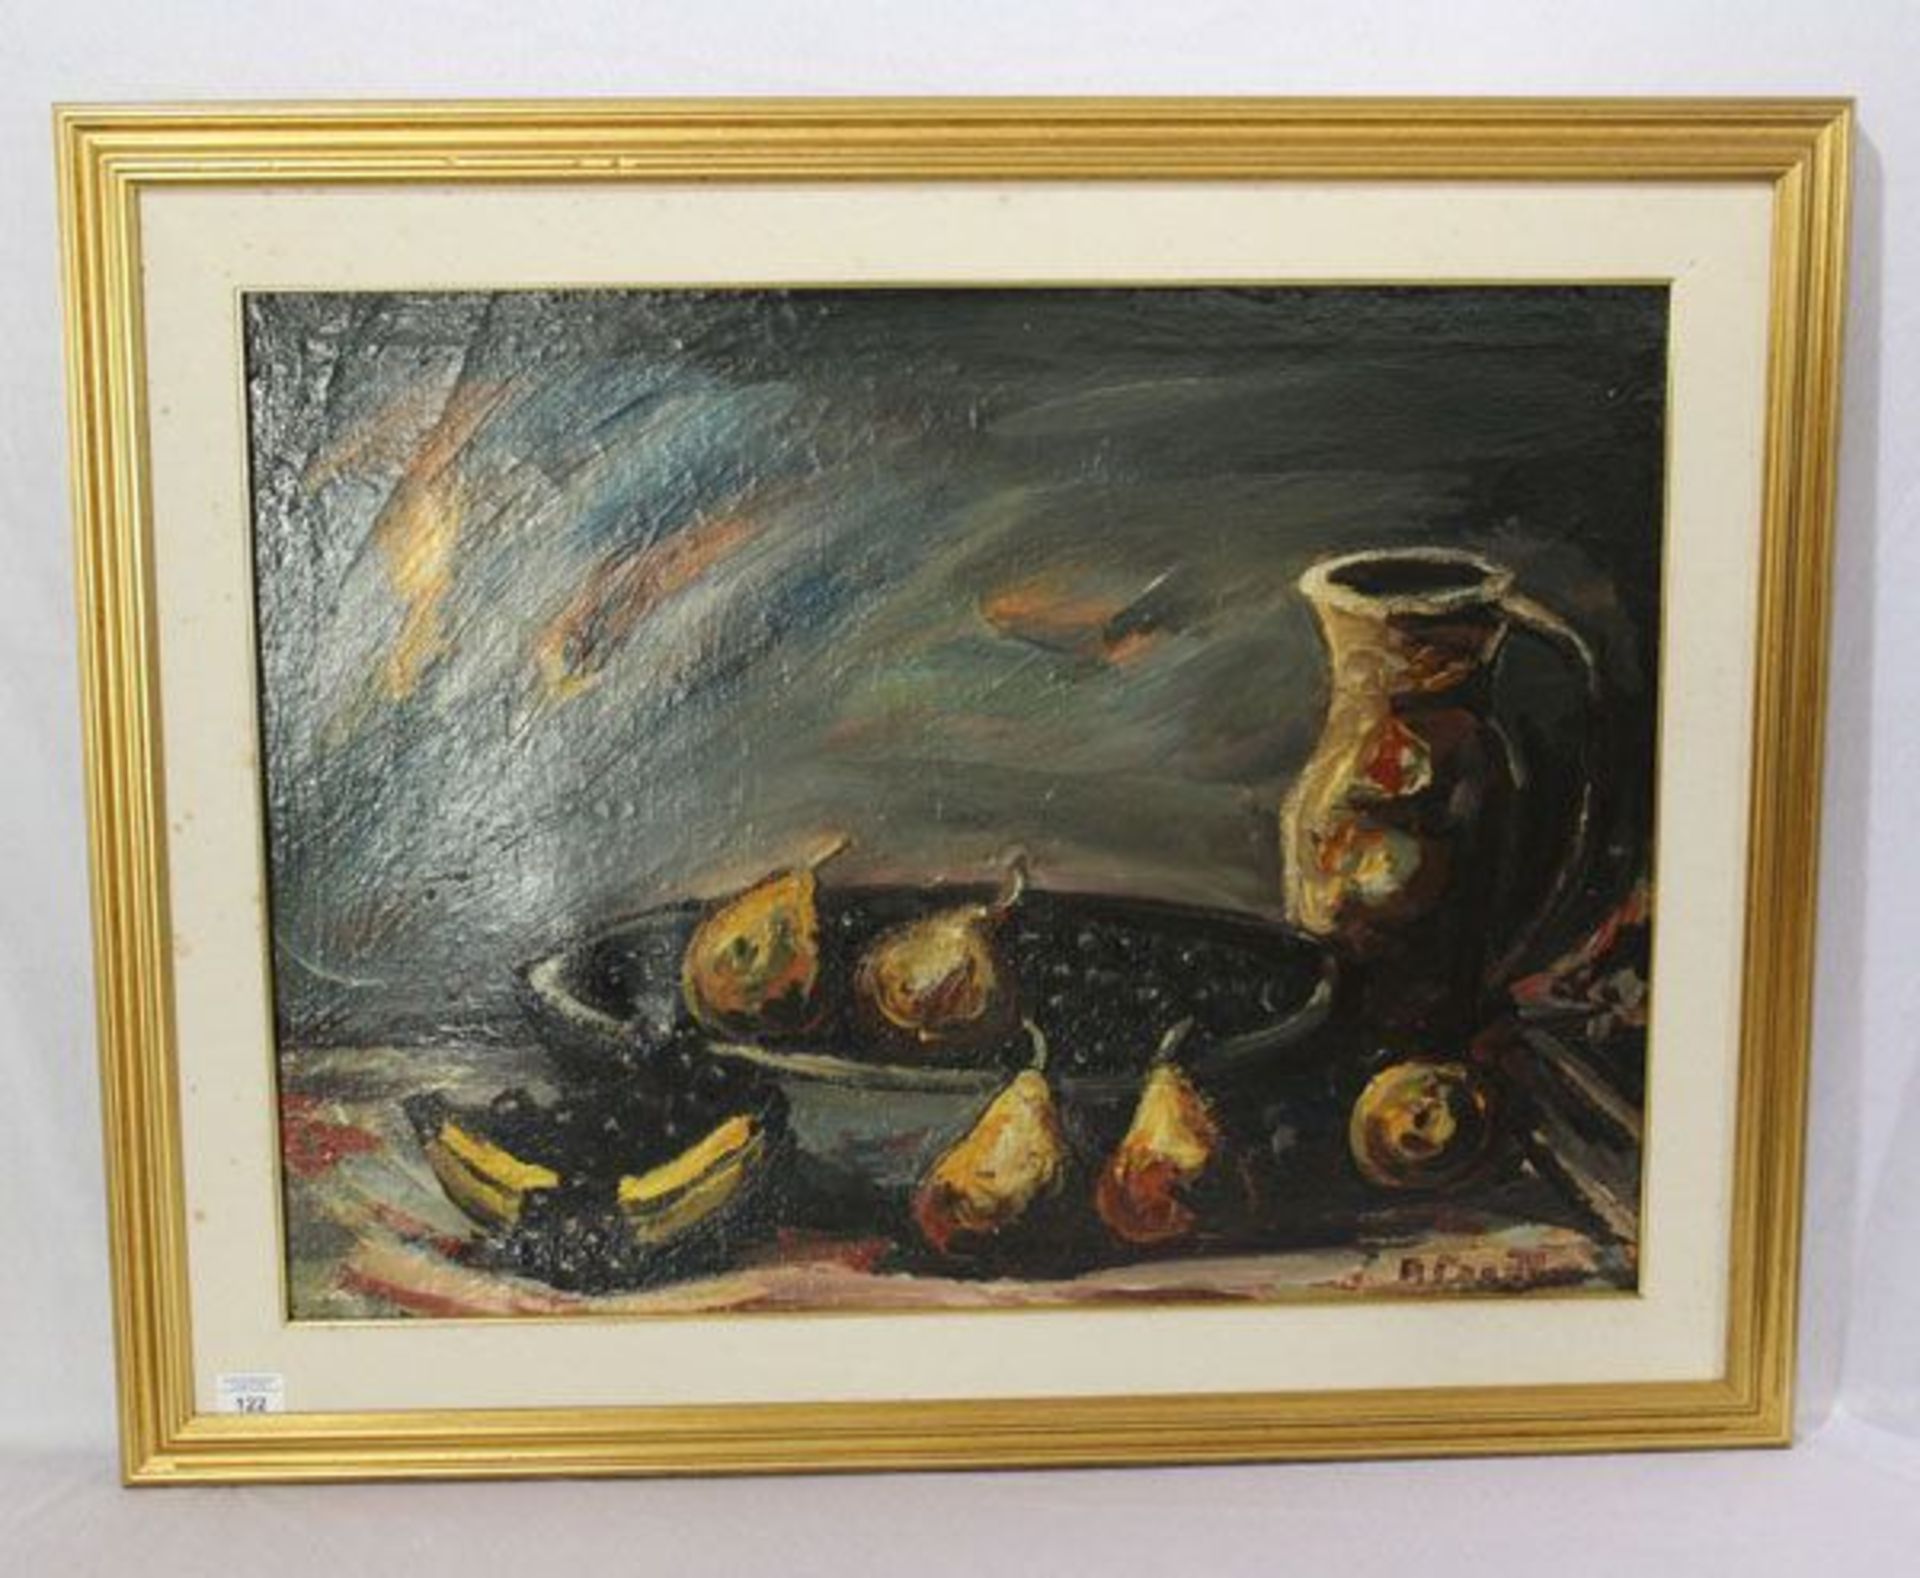 Gemälde ÖL/LW 'Obststilleben mit Schale und Krug', undeutlich signiert, gerahmt,